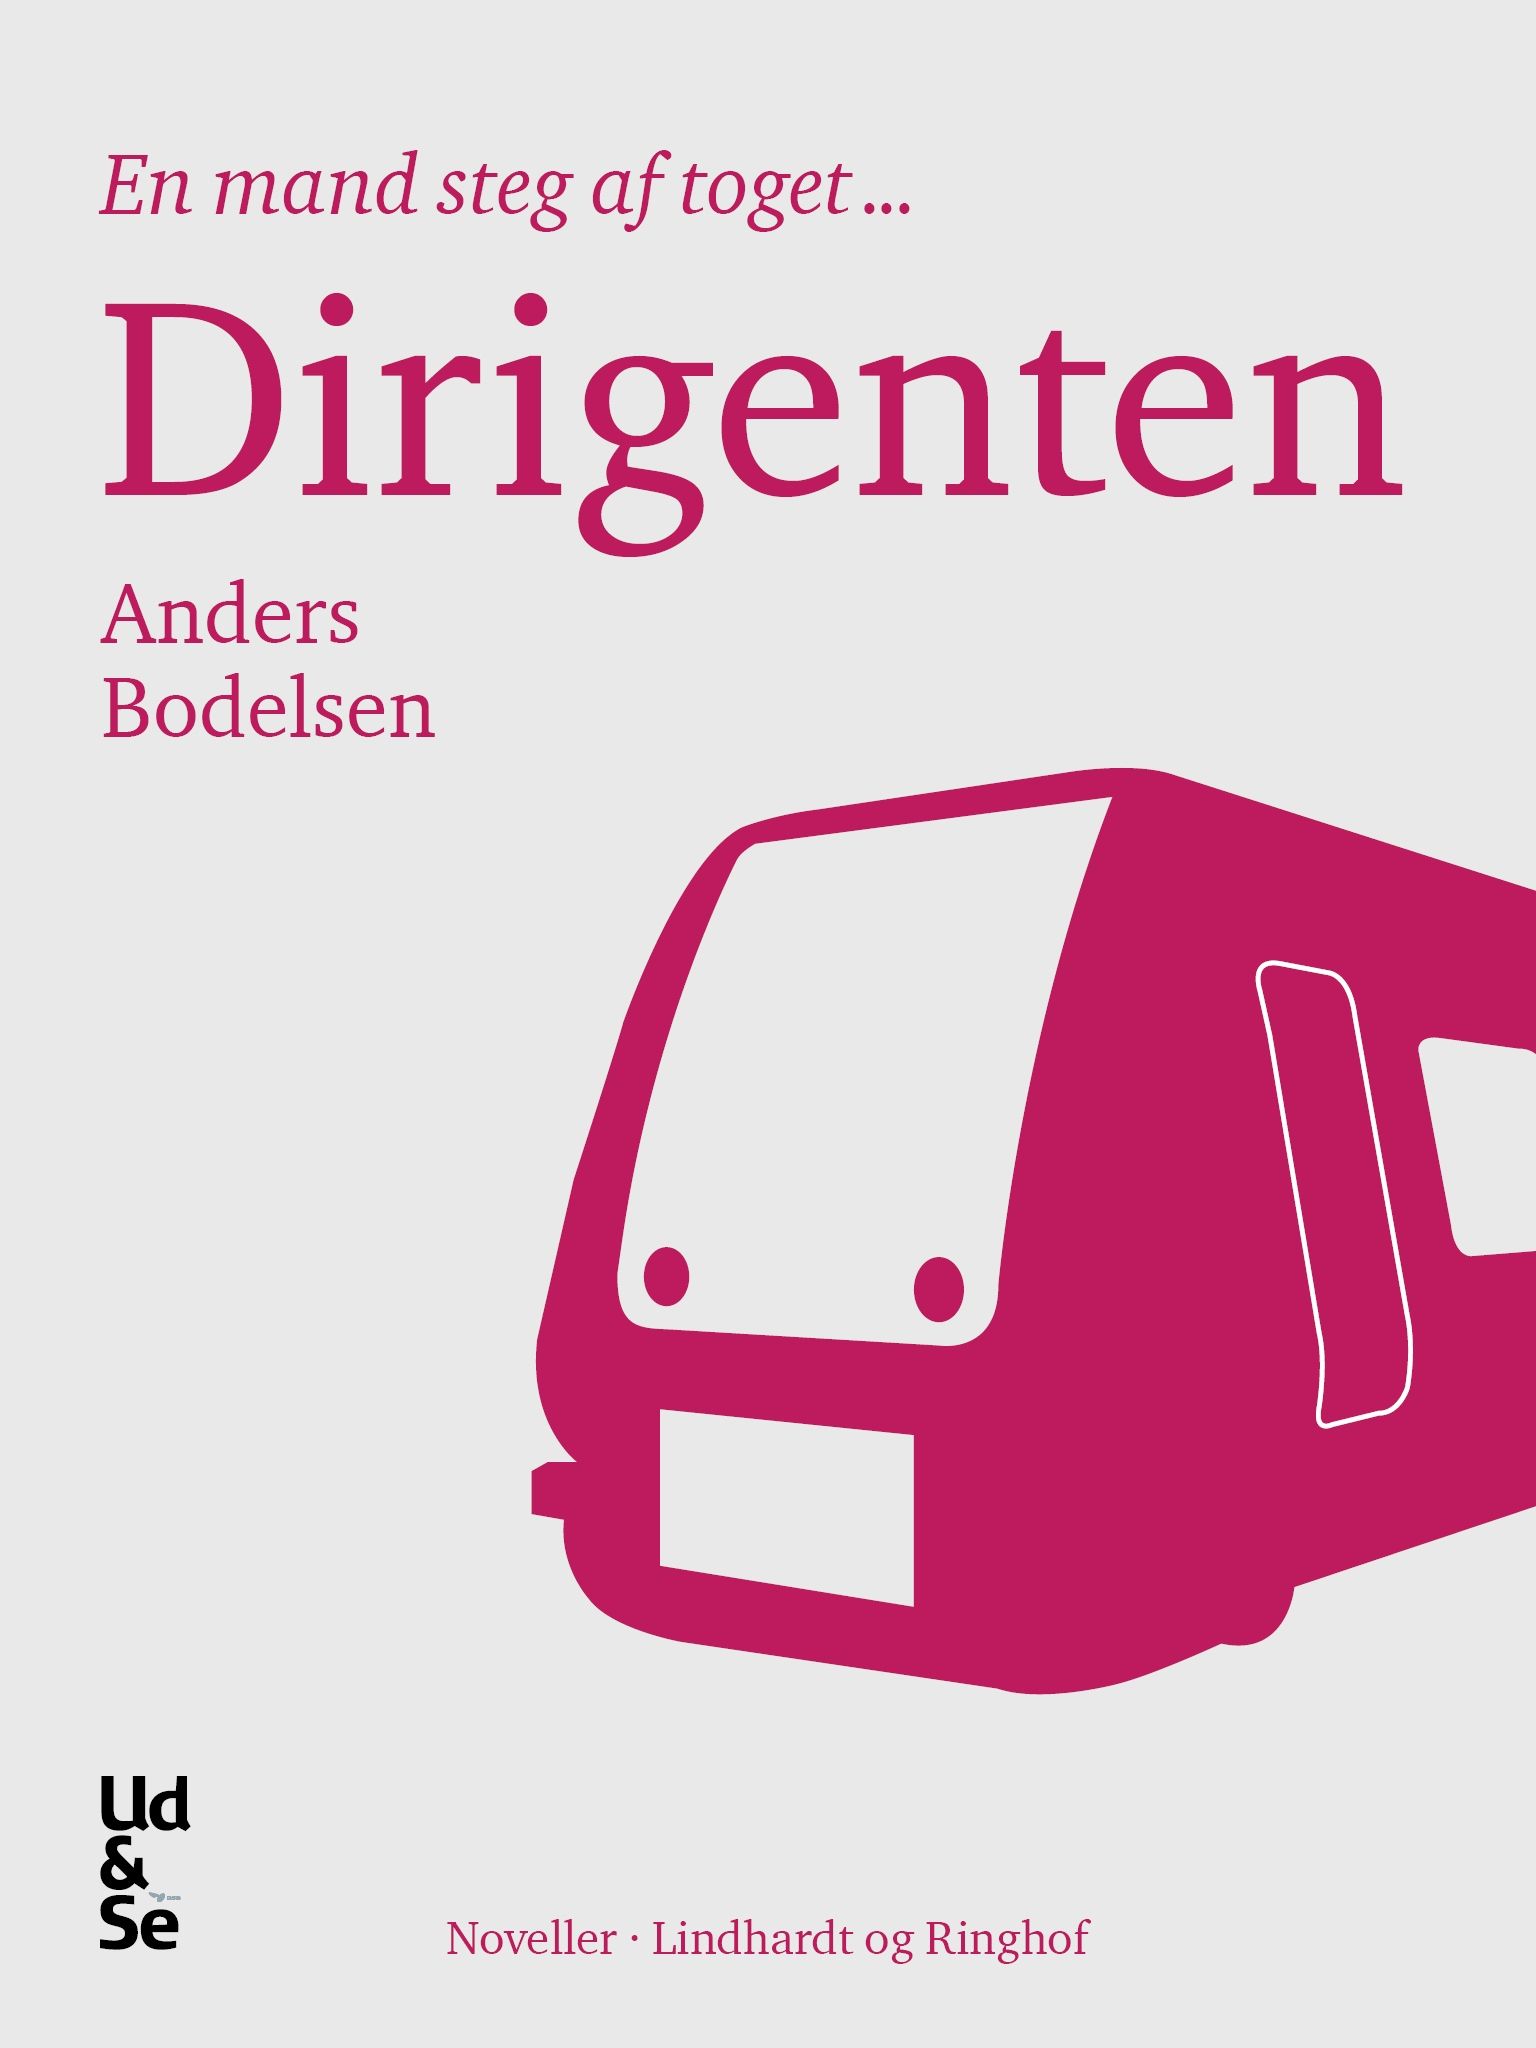 Dirigenten, e-bog af Anders Bodelsen